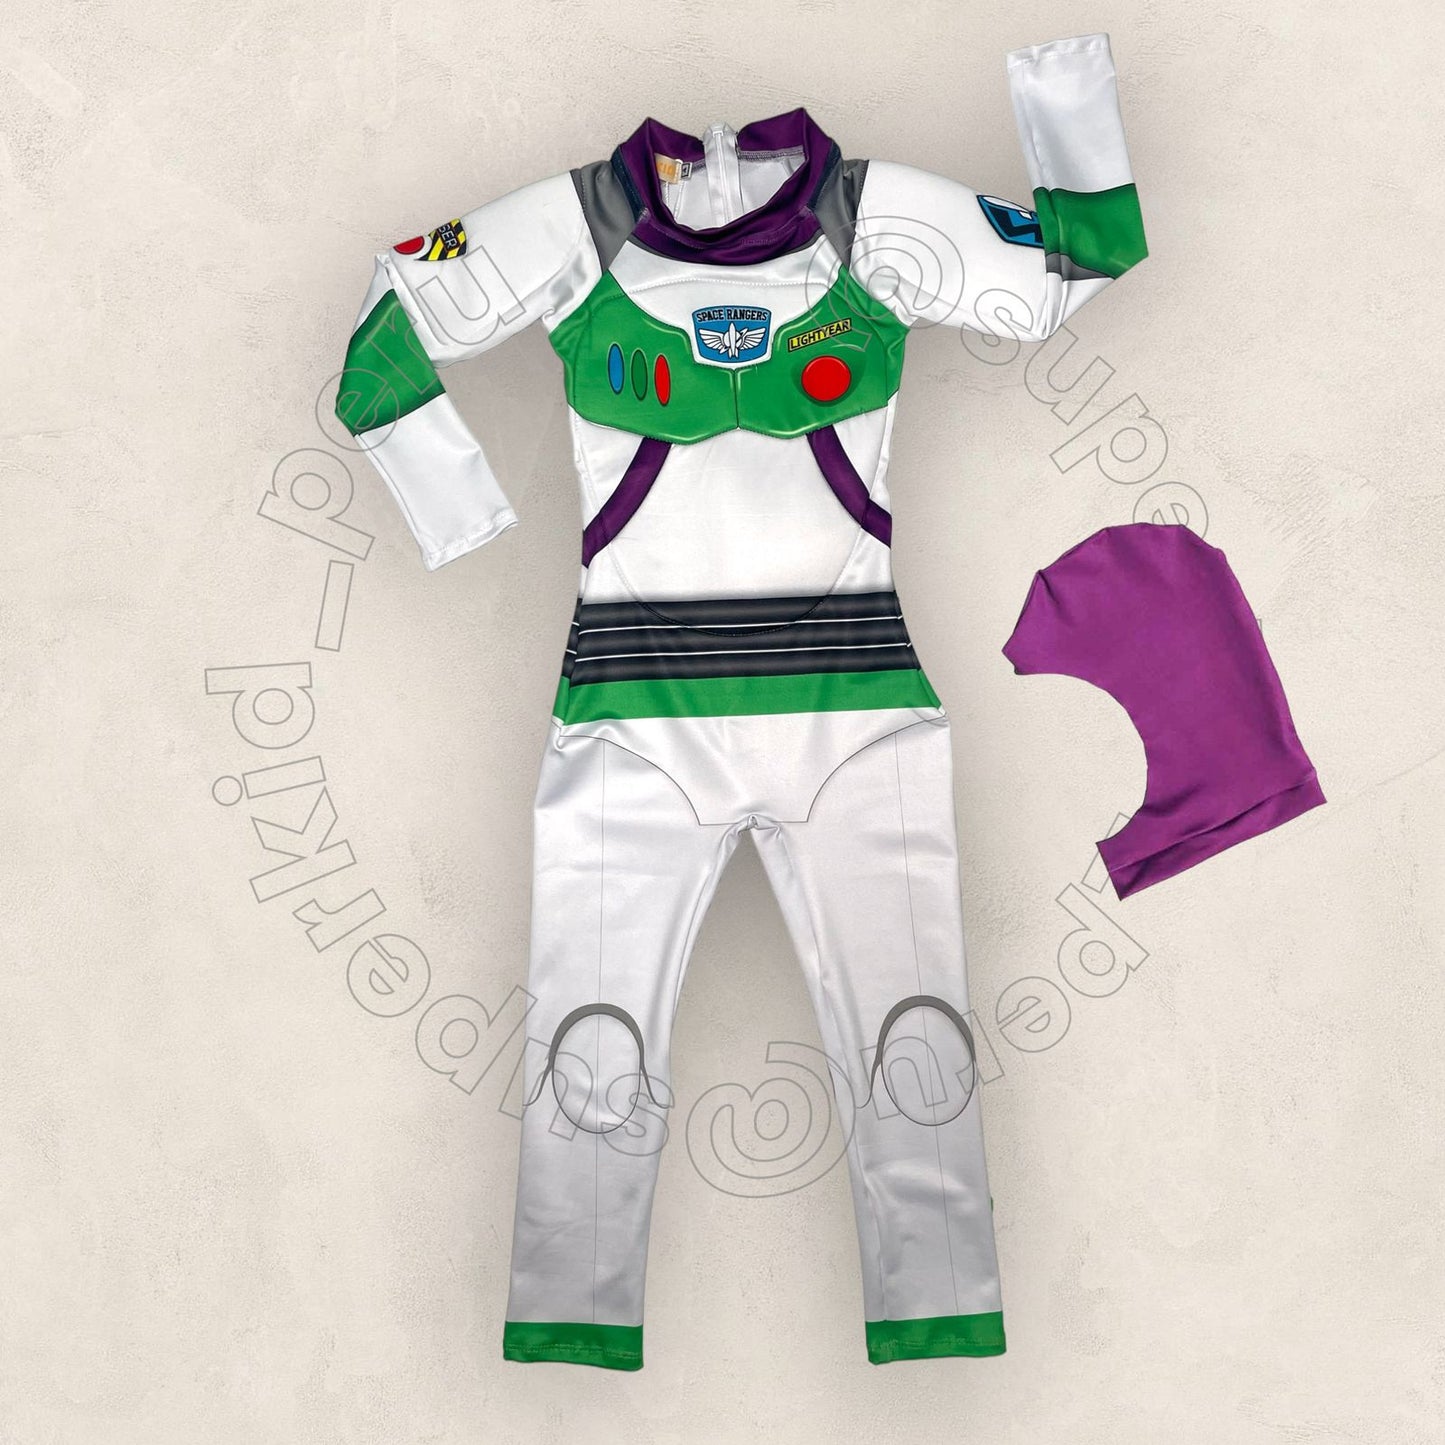 Disfraz Buzz Lightyear - Toy Story